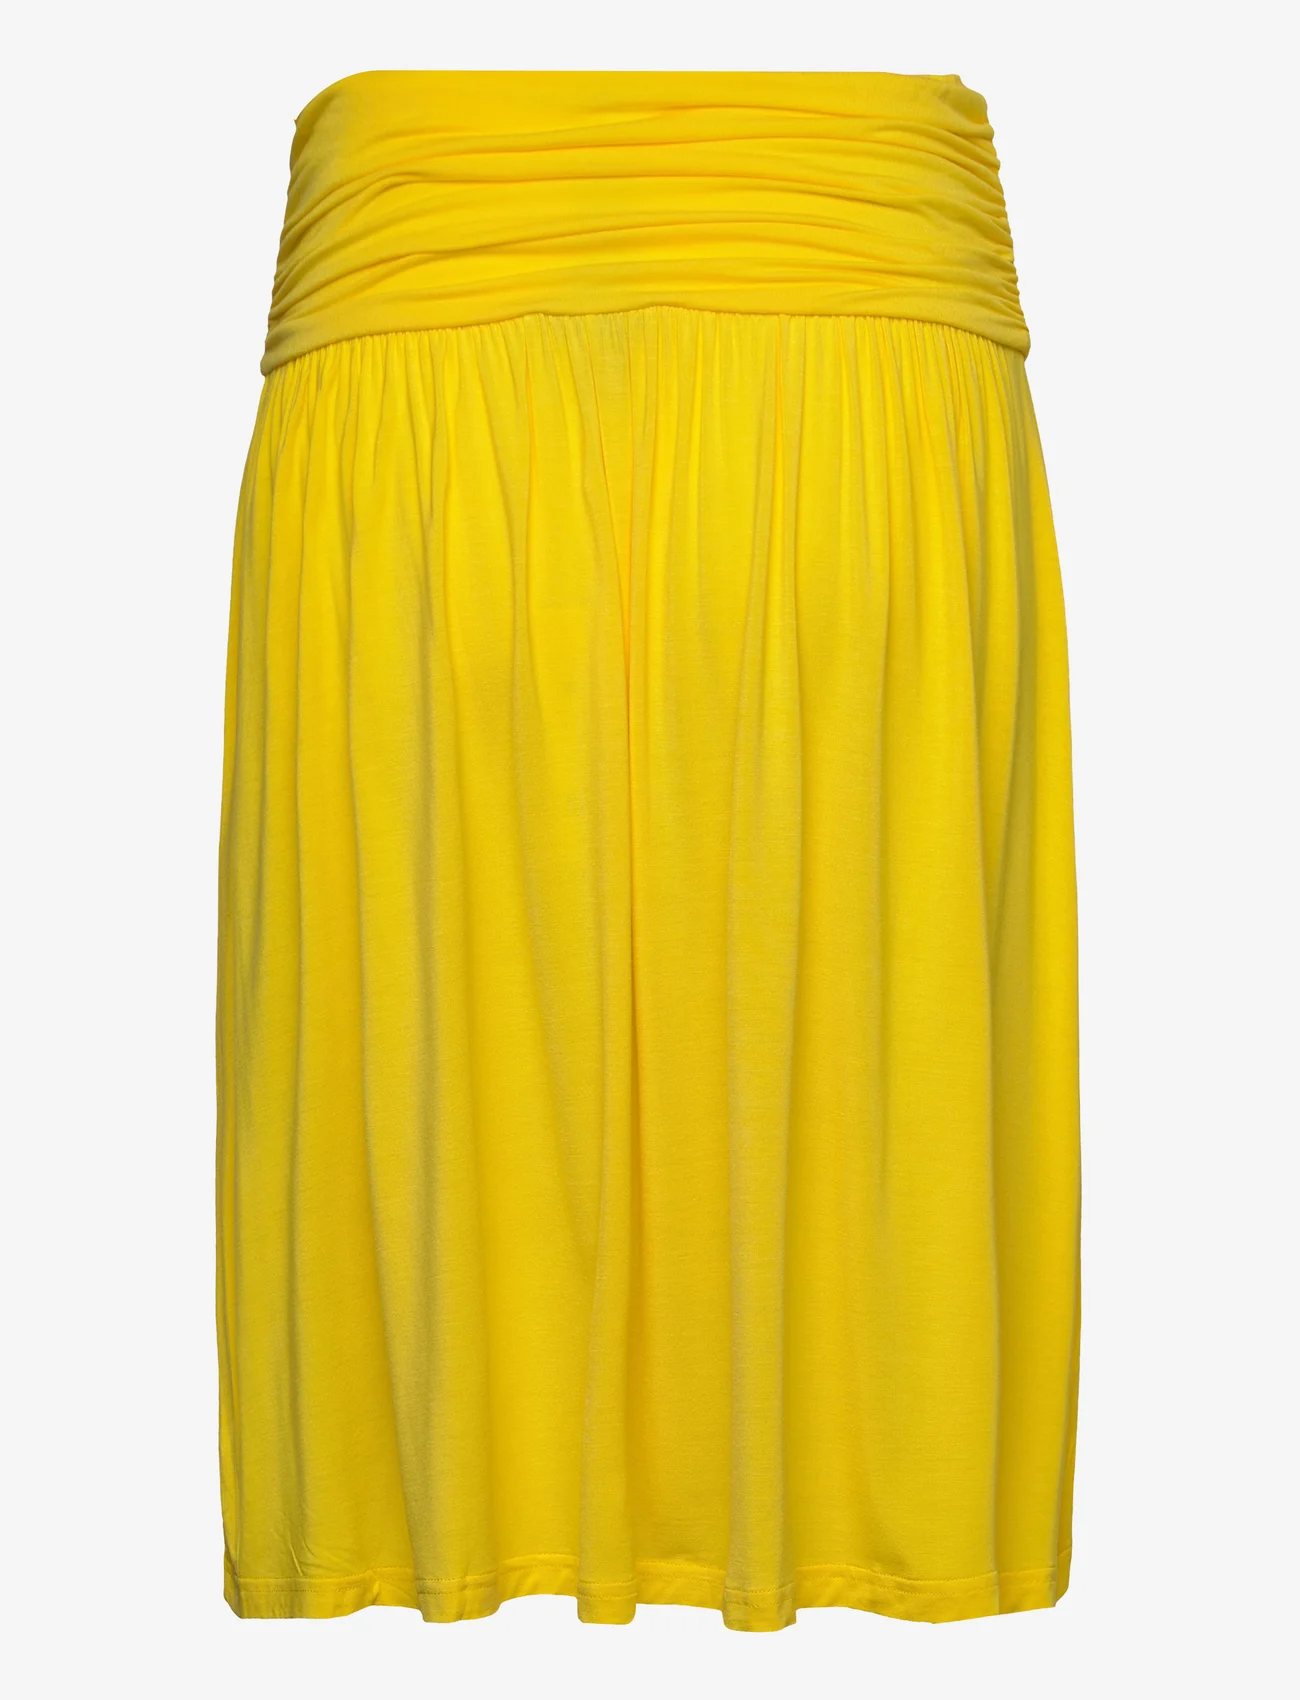 Rosemunde - Skirt - midi skirts - sunshine yellow - 1